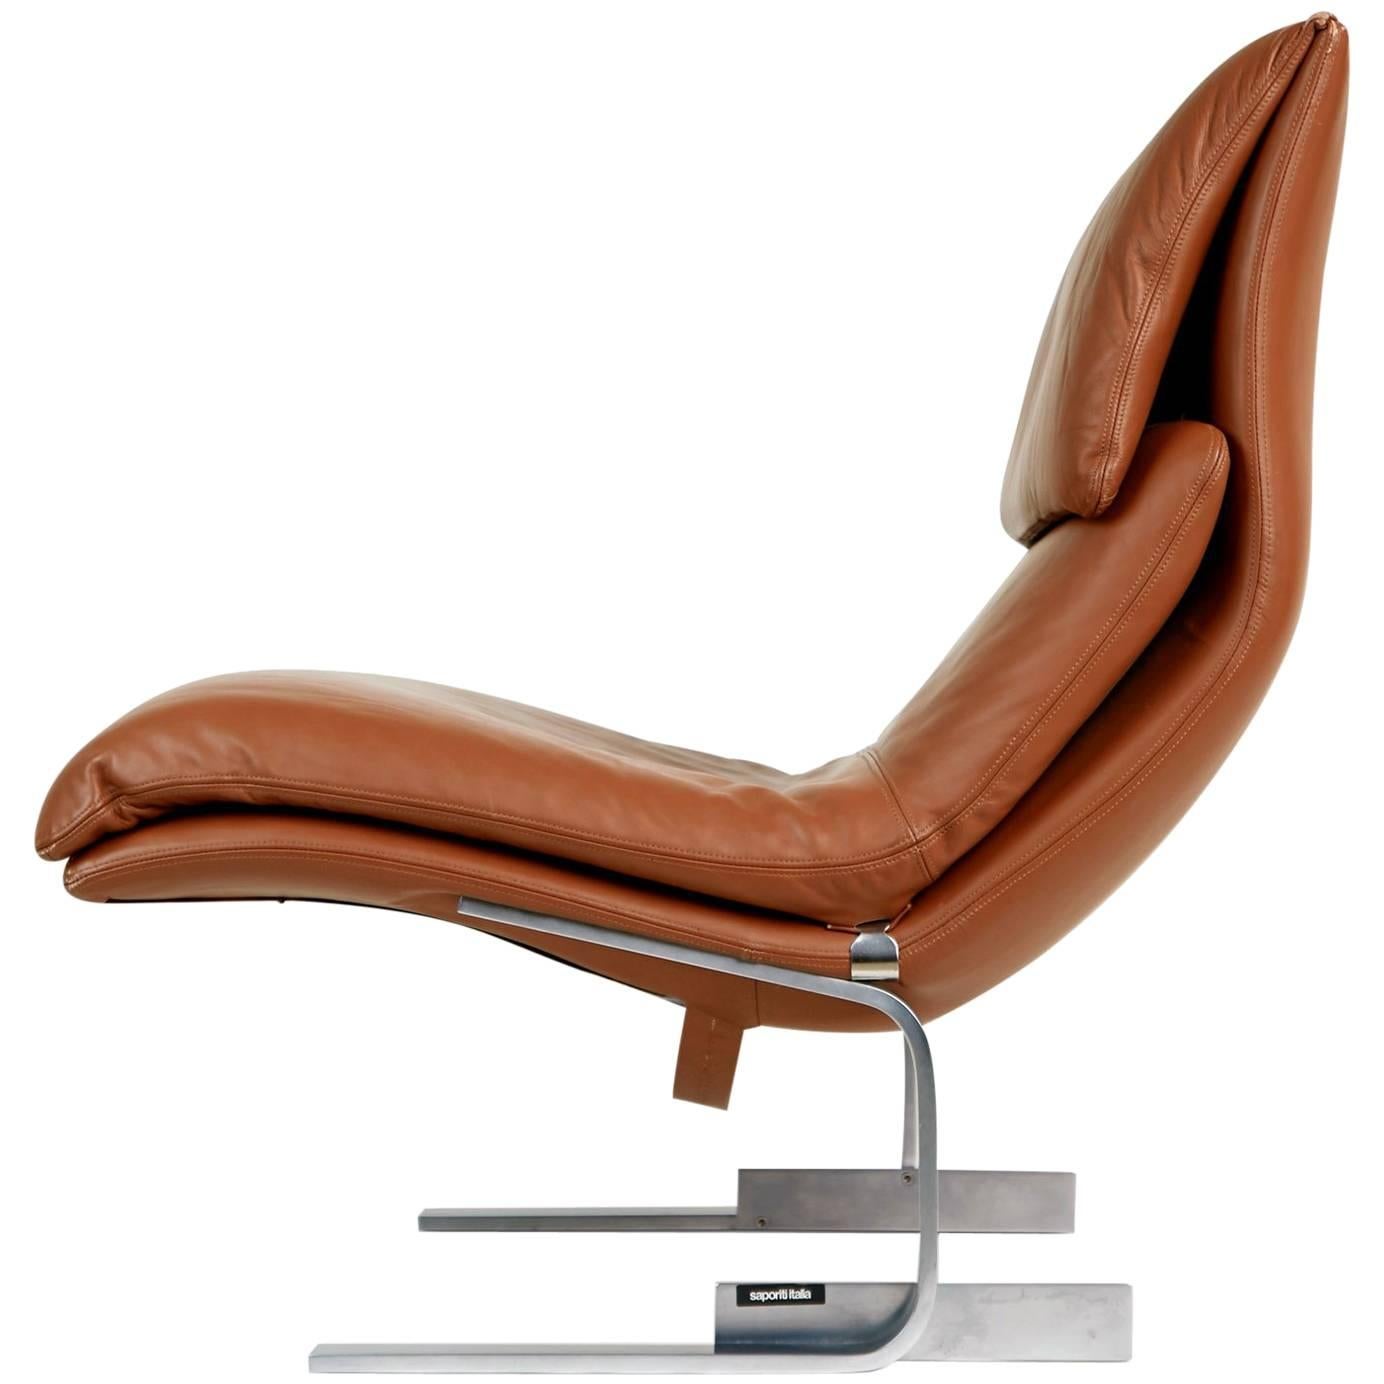 Onda Leather Lounge Chair by Giovanni Offredi for Saporiti Italia, circa 1970